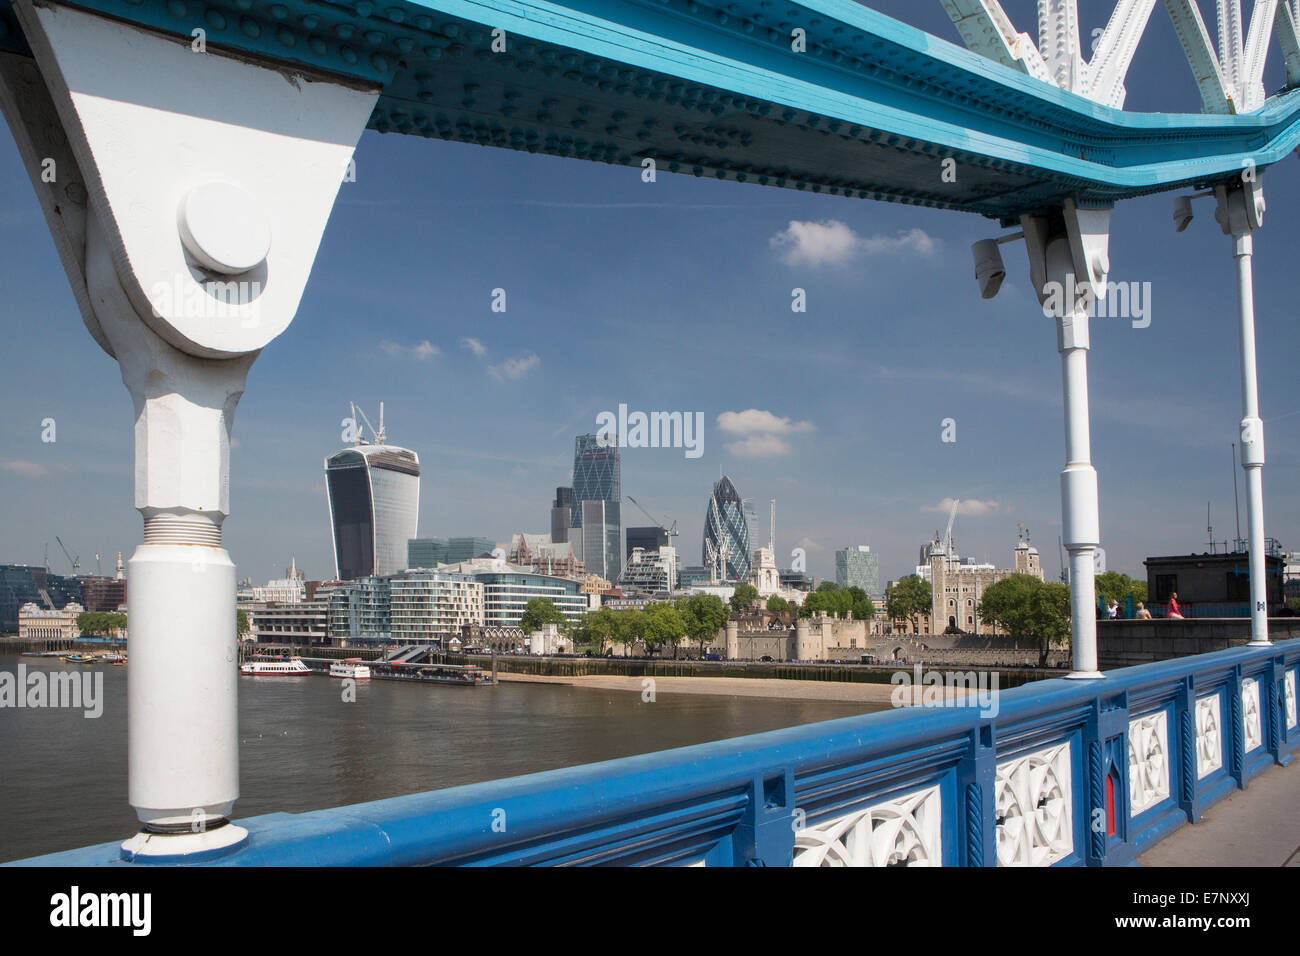 Ciudad, Londres, Inglaterra, Reino Unido, arquitectura, azul, puente, torre, famoso skyline, el acero, el Támesis, río, turismo, torre, viajes Foto de stock